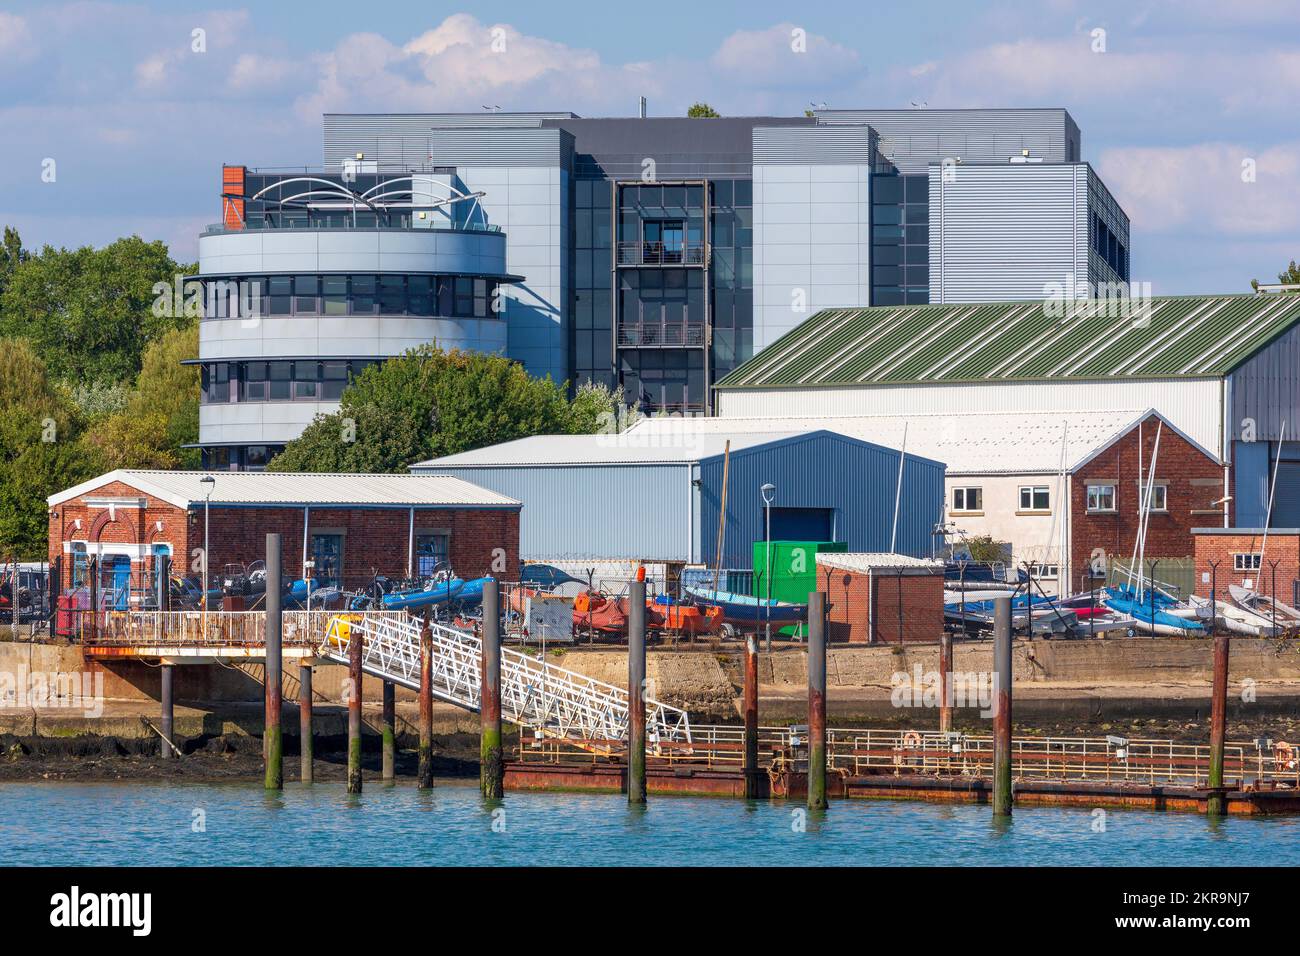 Navy Command, Whale Island,Portsmouth, Hampshire, England, United Kingdom Stock Photo